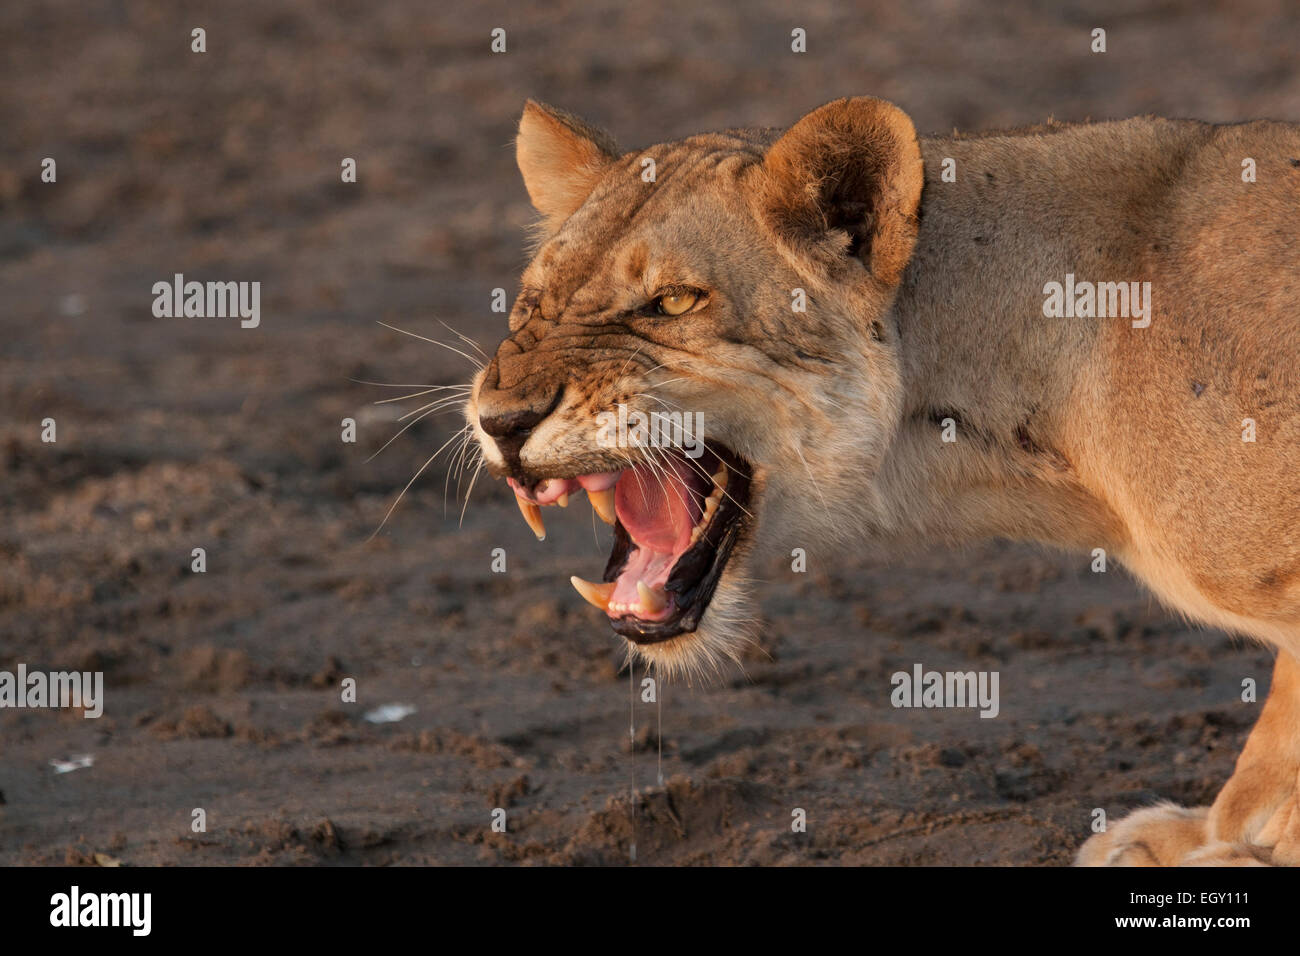 Lioness (Panthera leo) growling Stock Photo